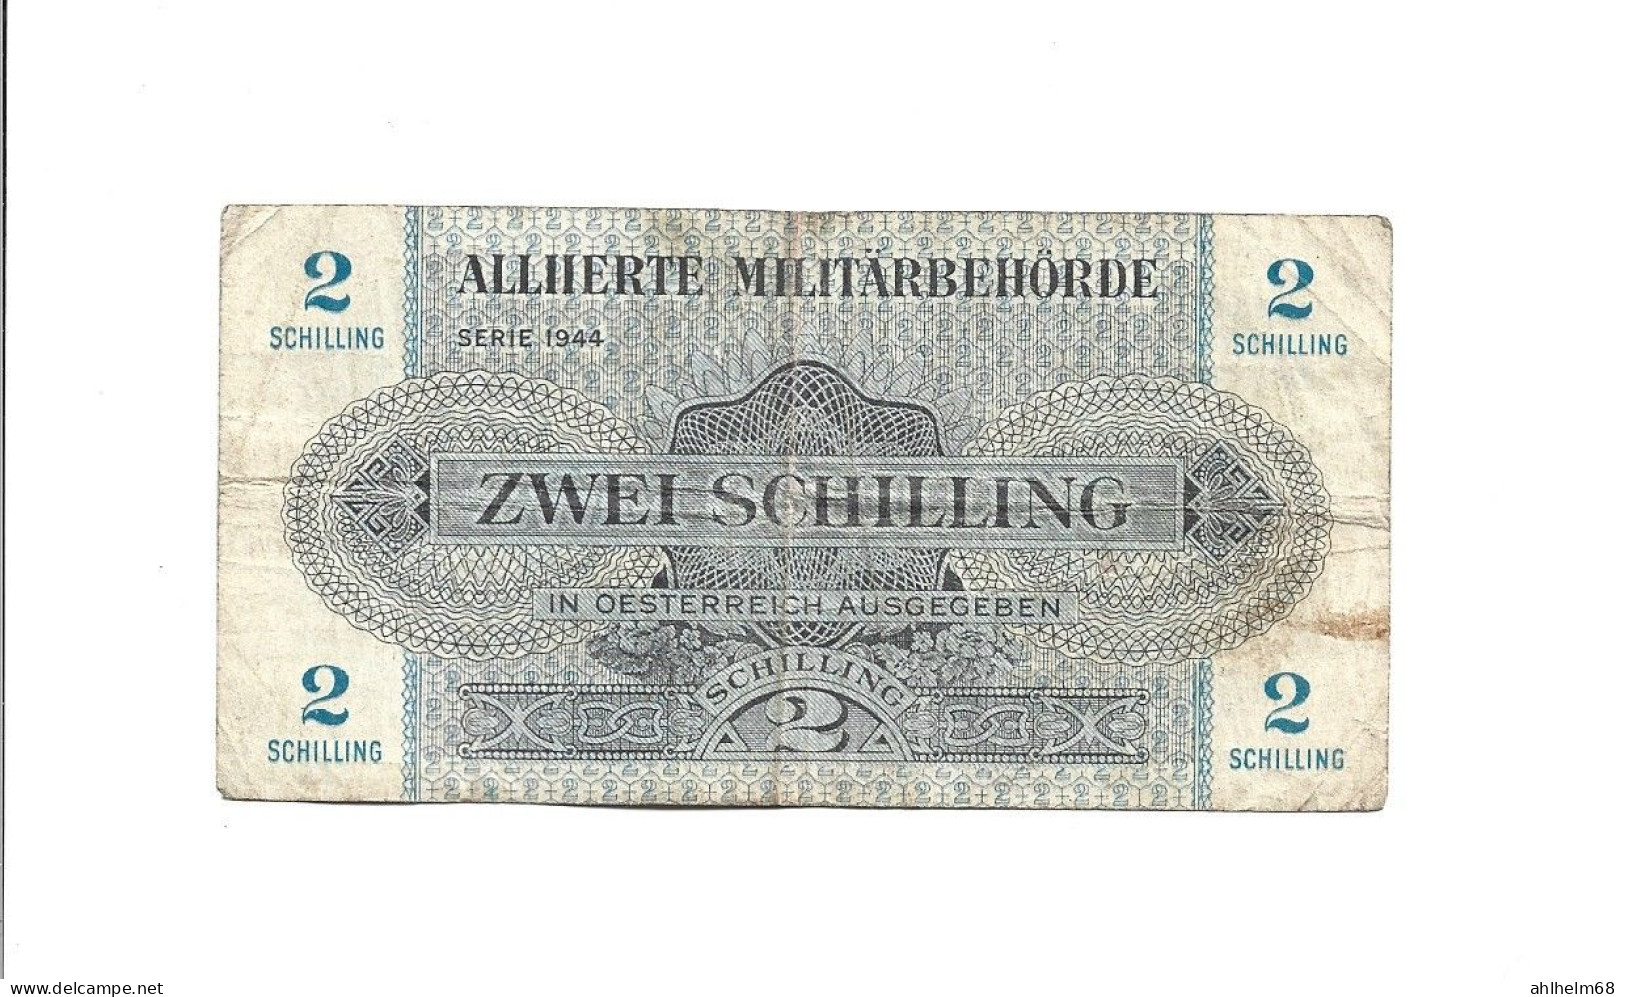 2 Schilling Banknote Der Alliierten Militärbehörde Für Österreich, 1944 - Austria